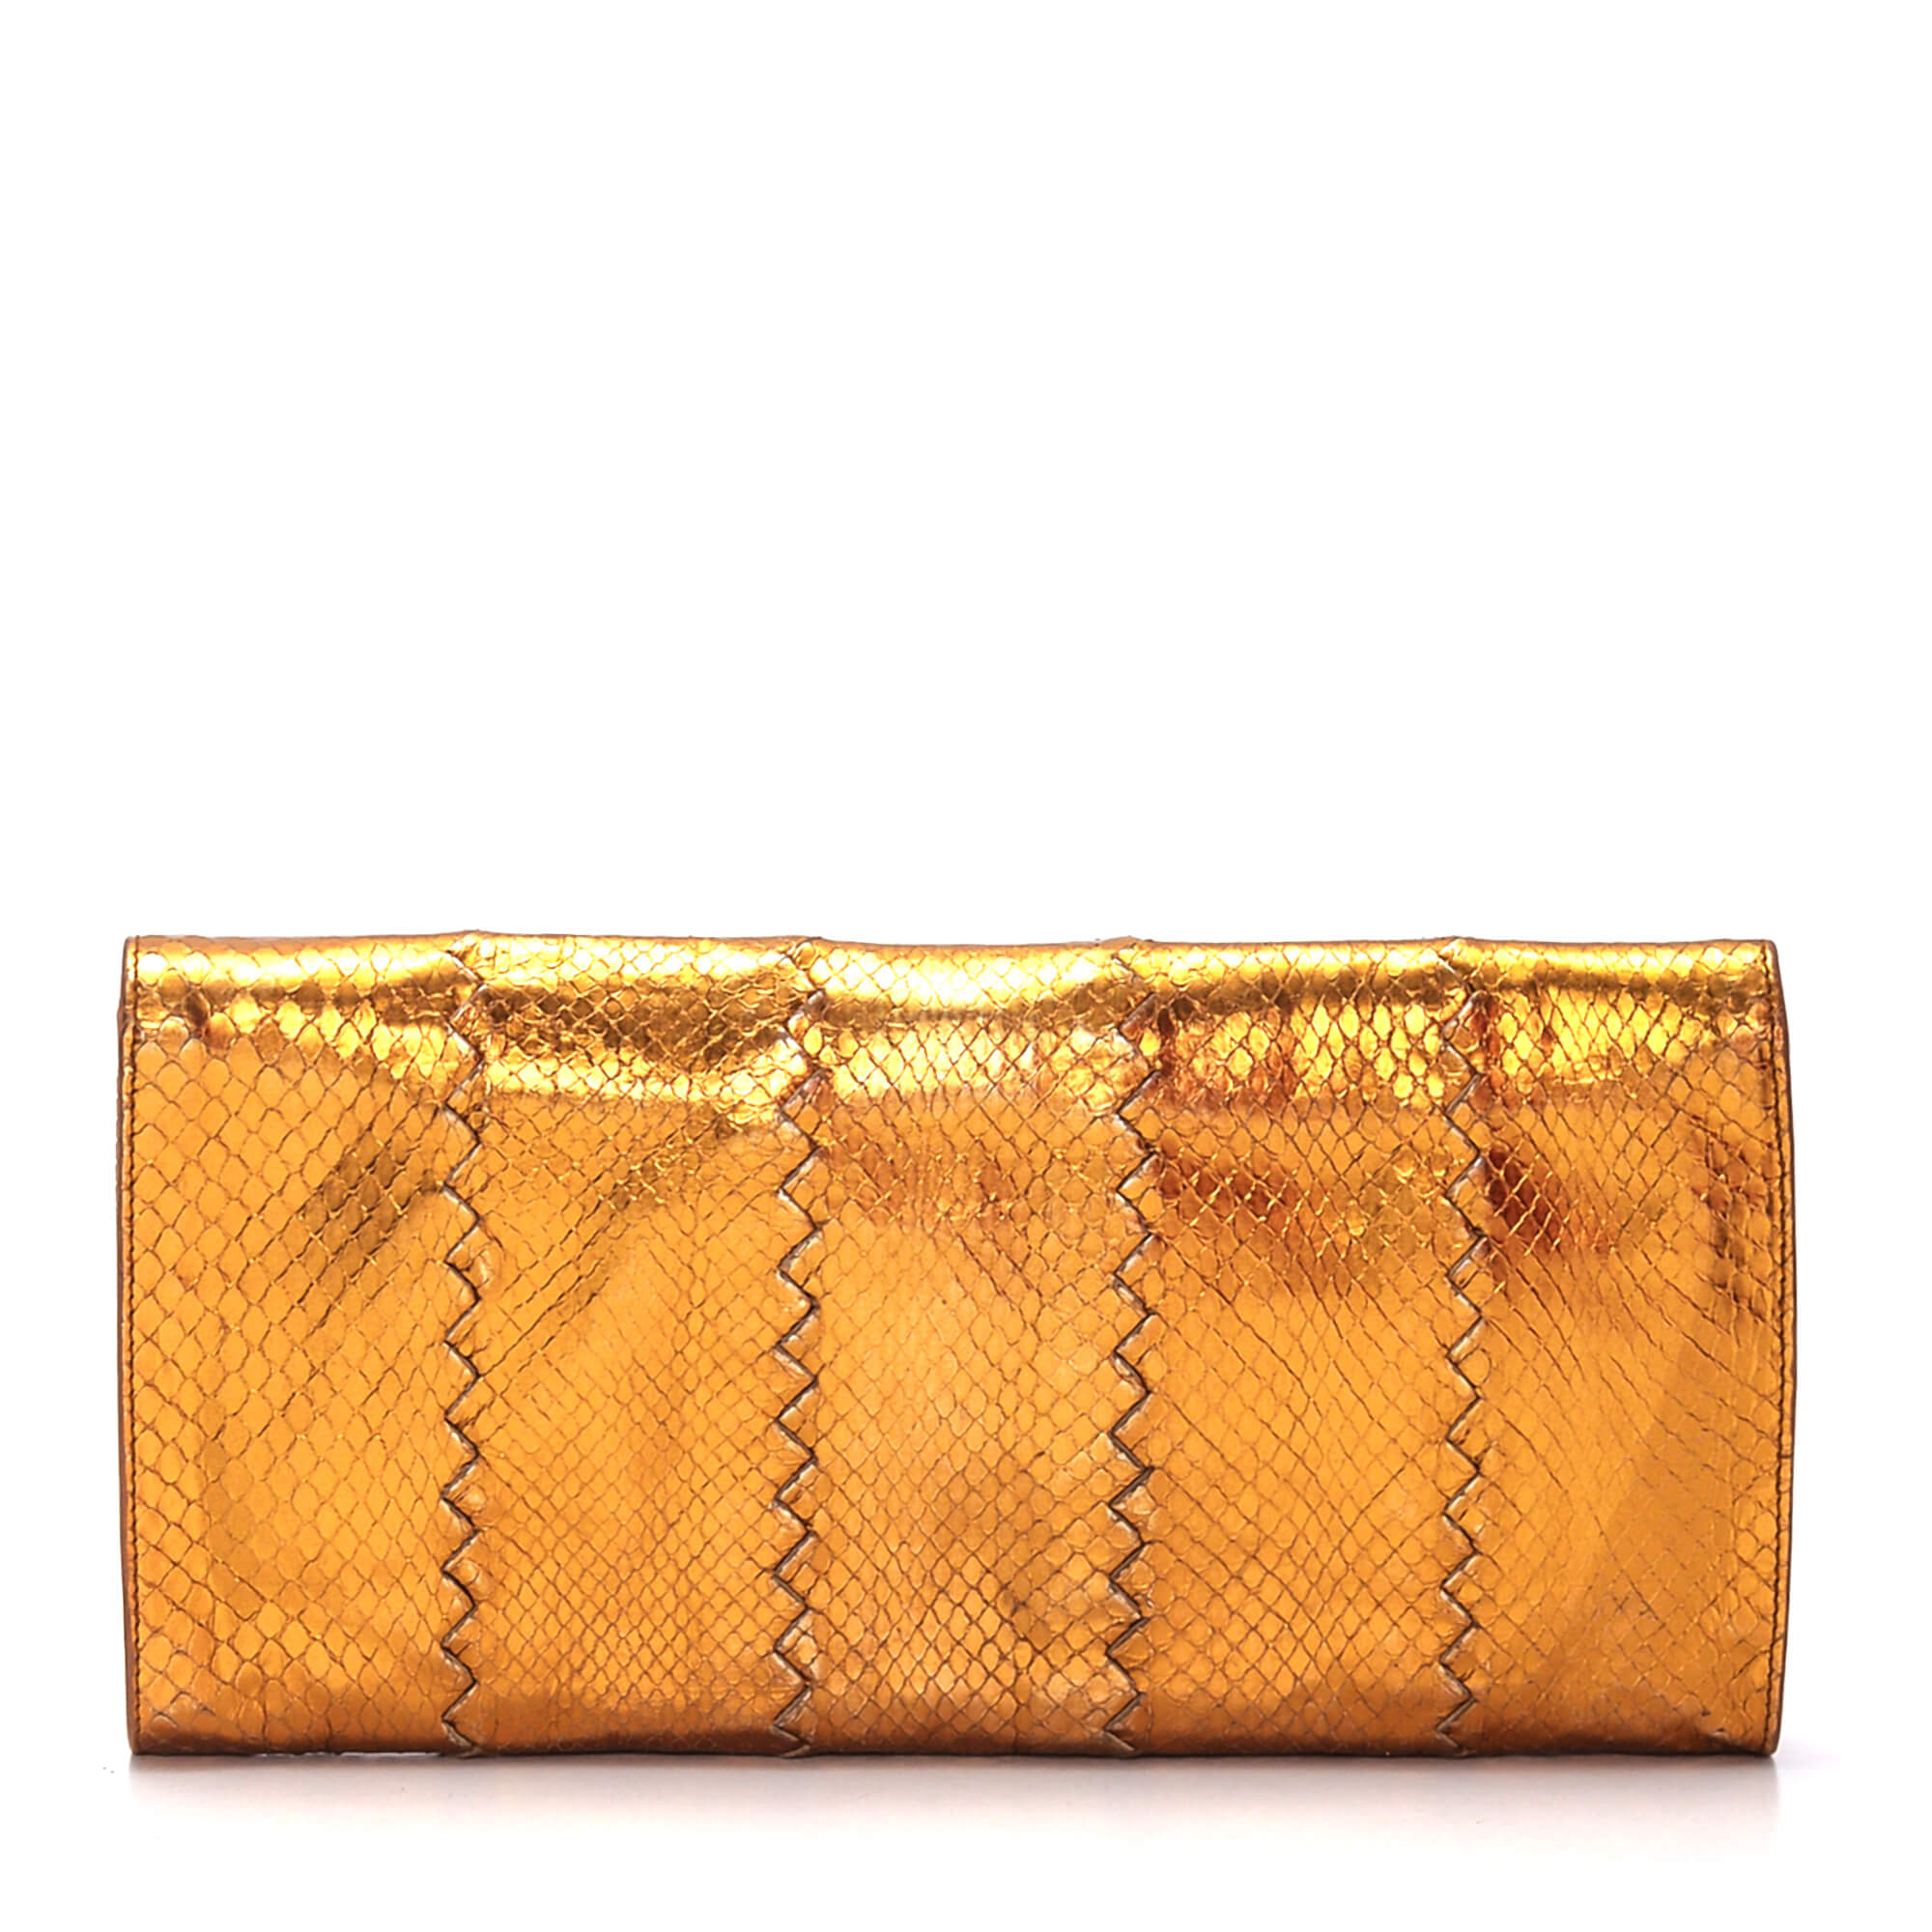 Bottega Veneta - Gold Leather Clutch